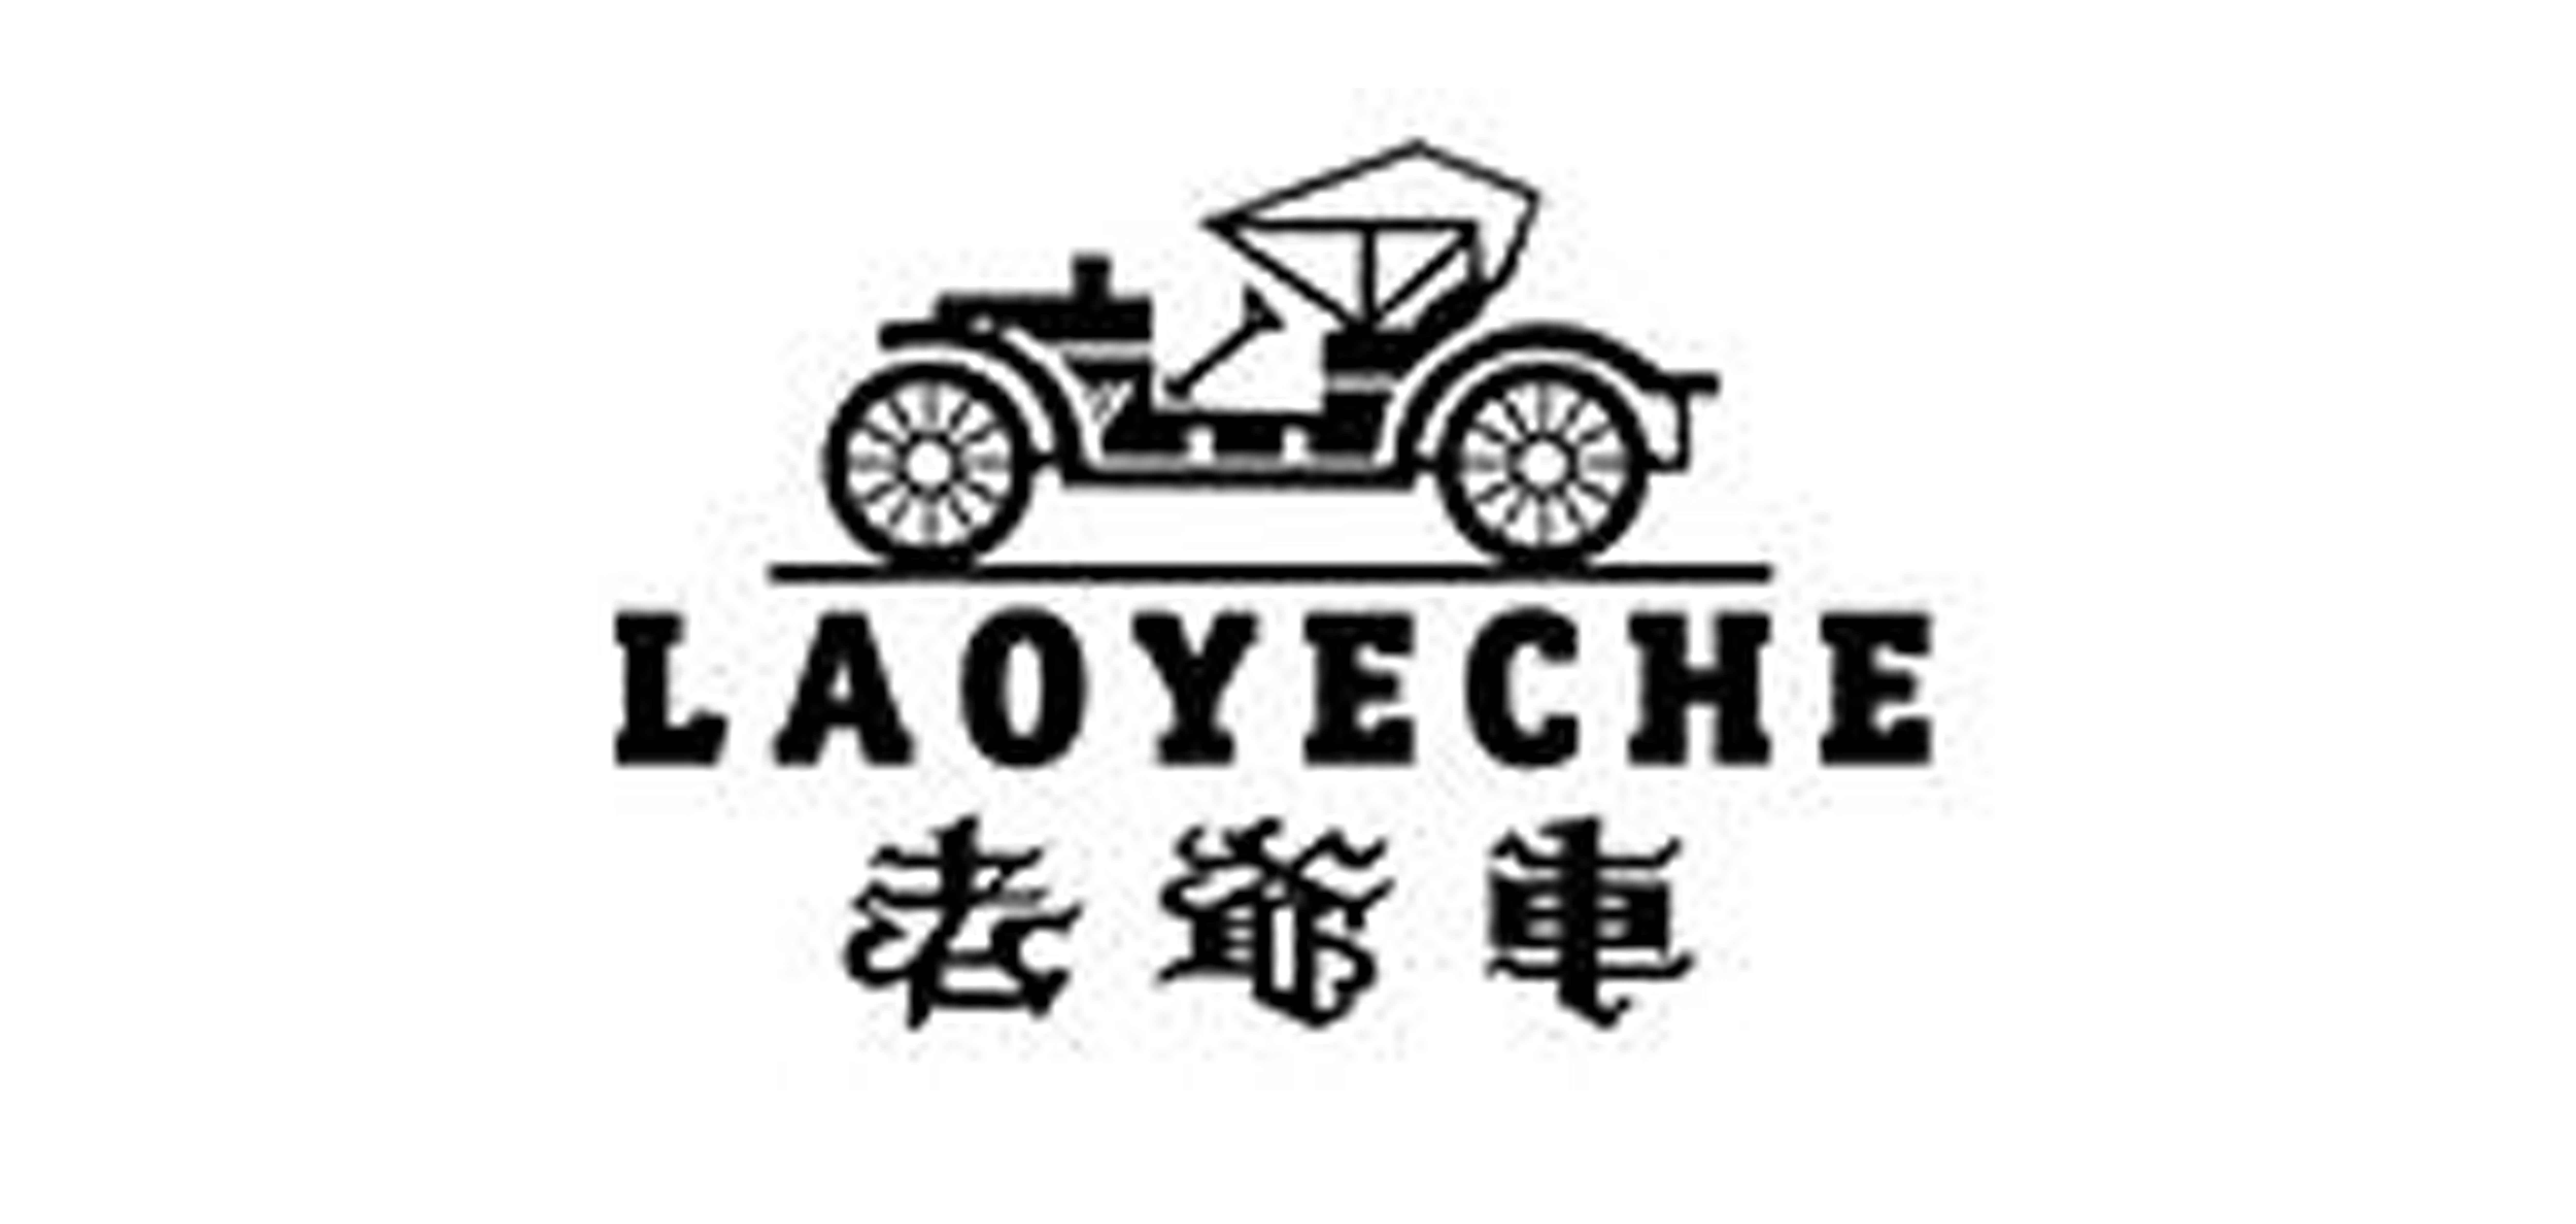 老爷车/Laoyeche